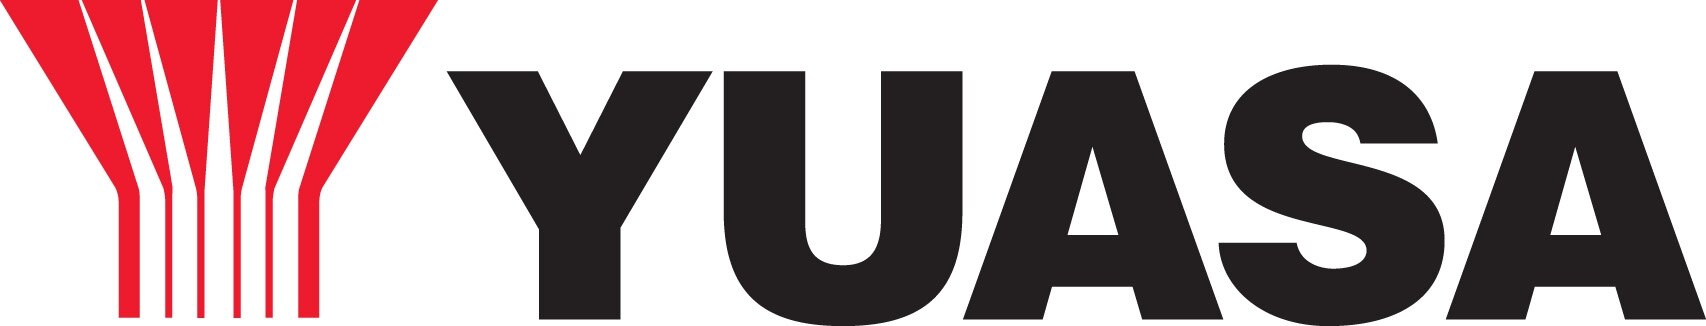 YUASA-logo